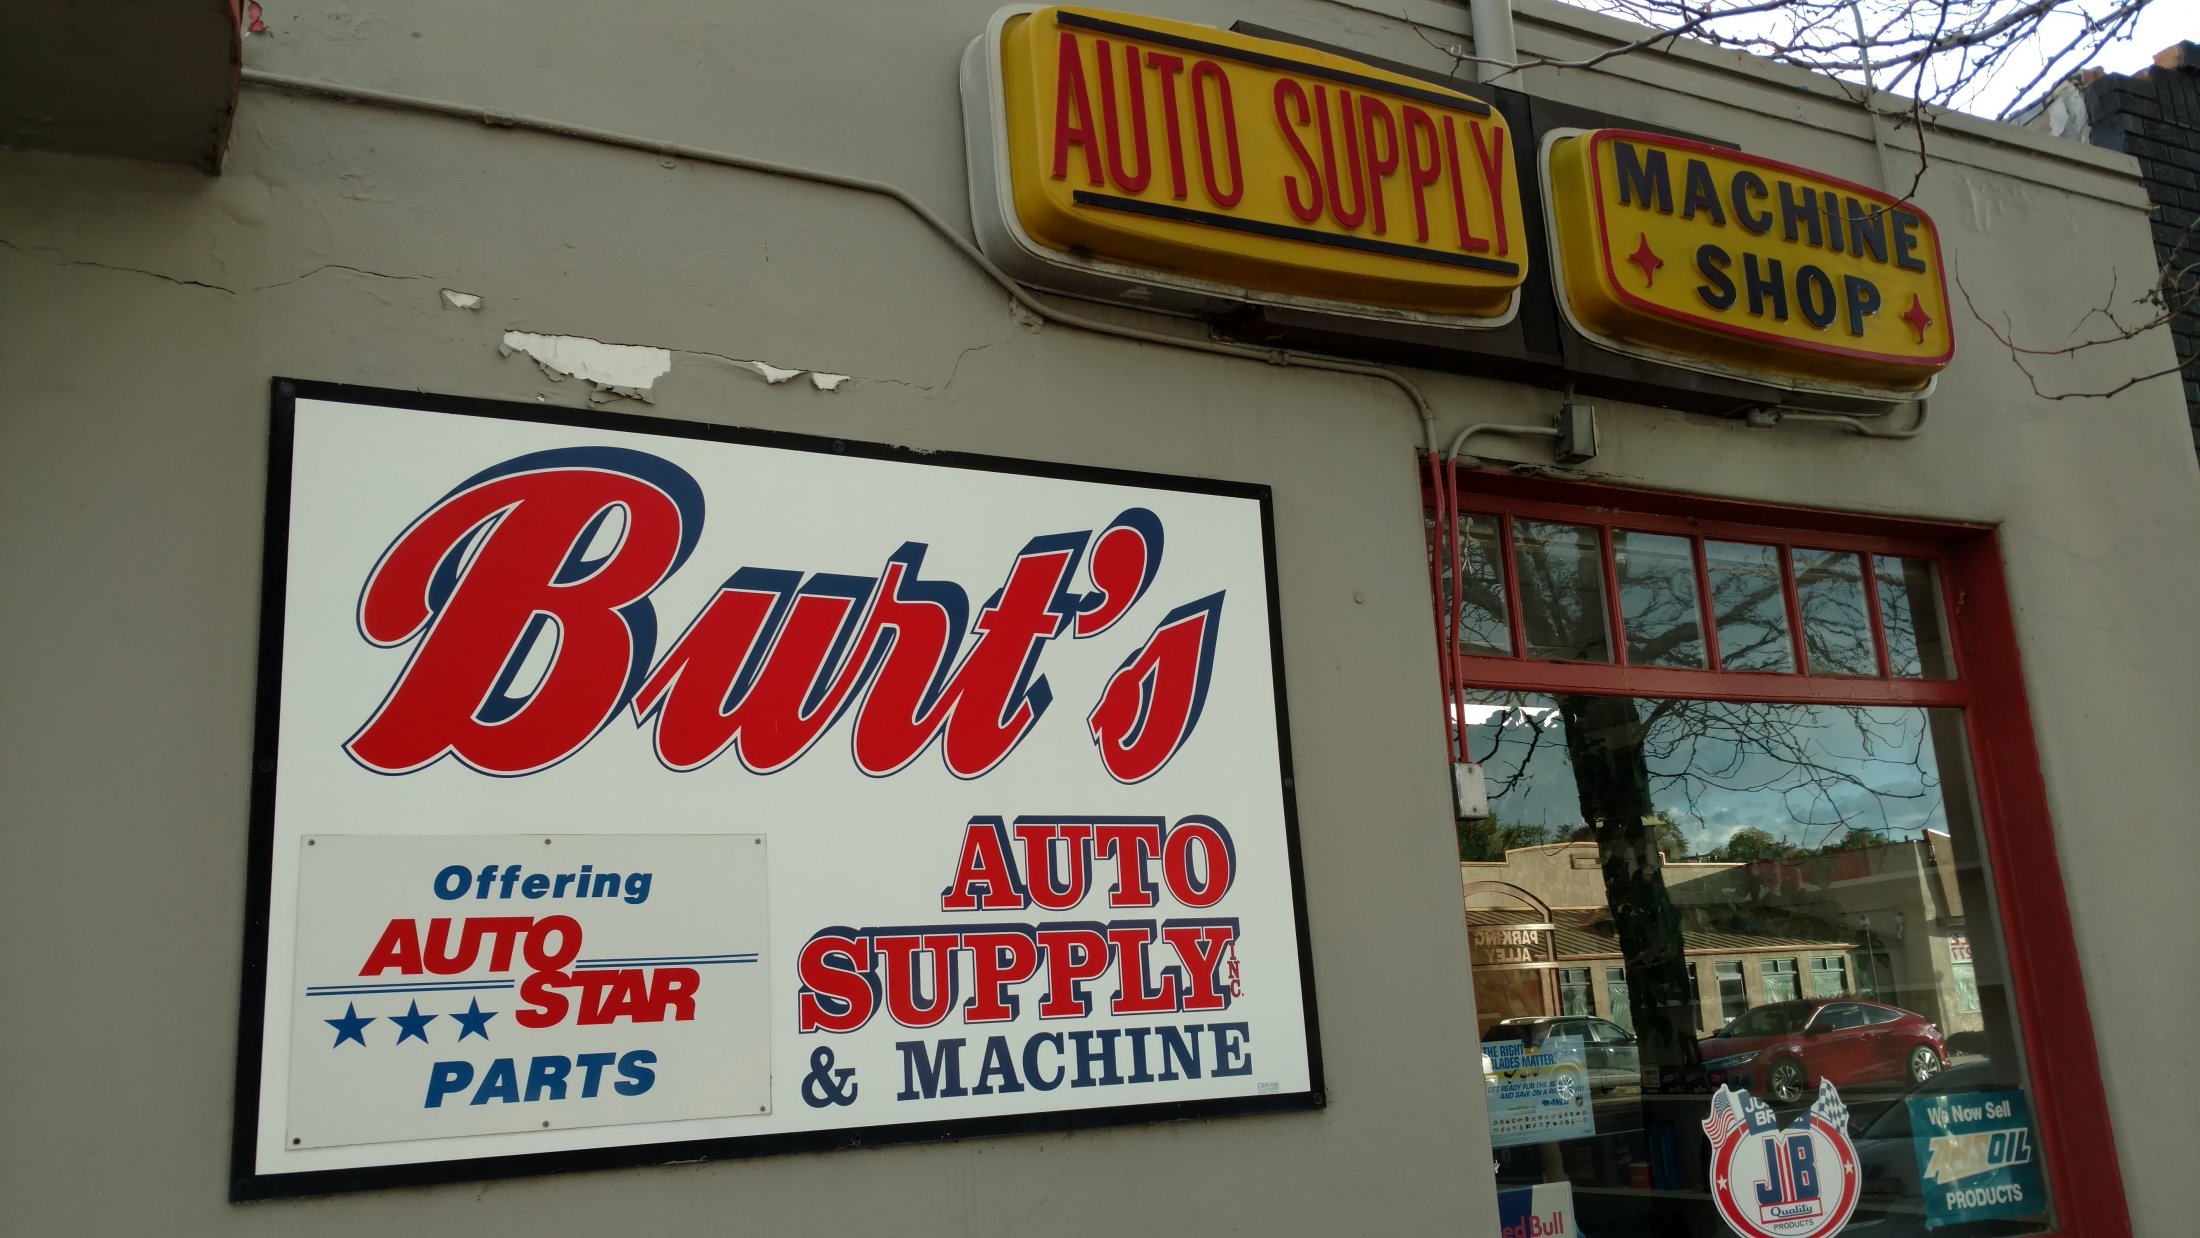 Blonot Garage, Machine =Shop And Auto Parts